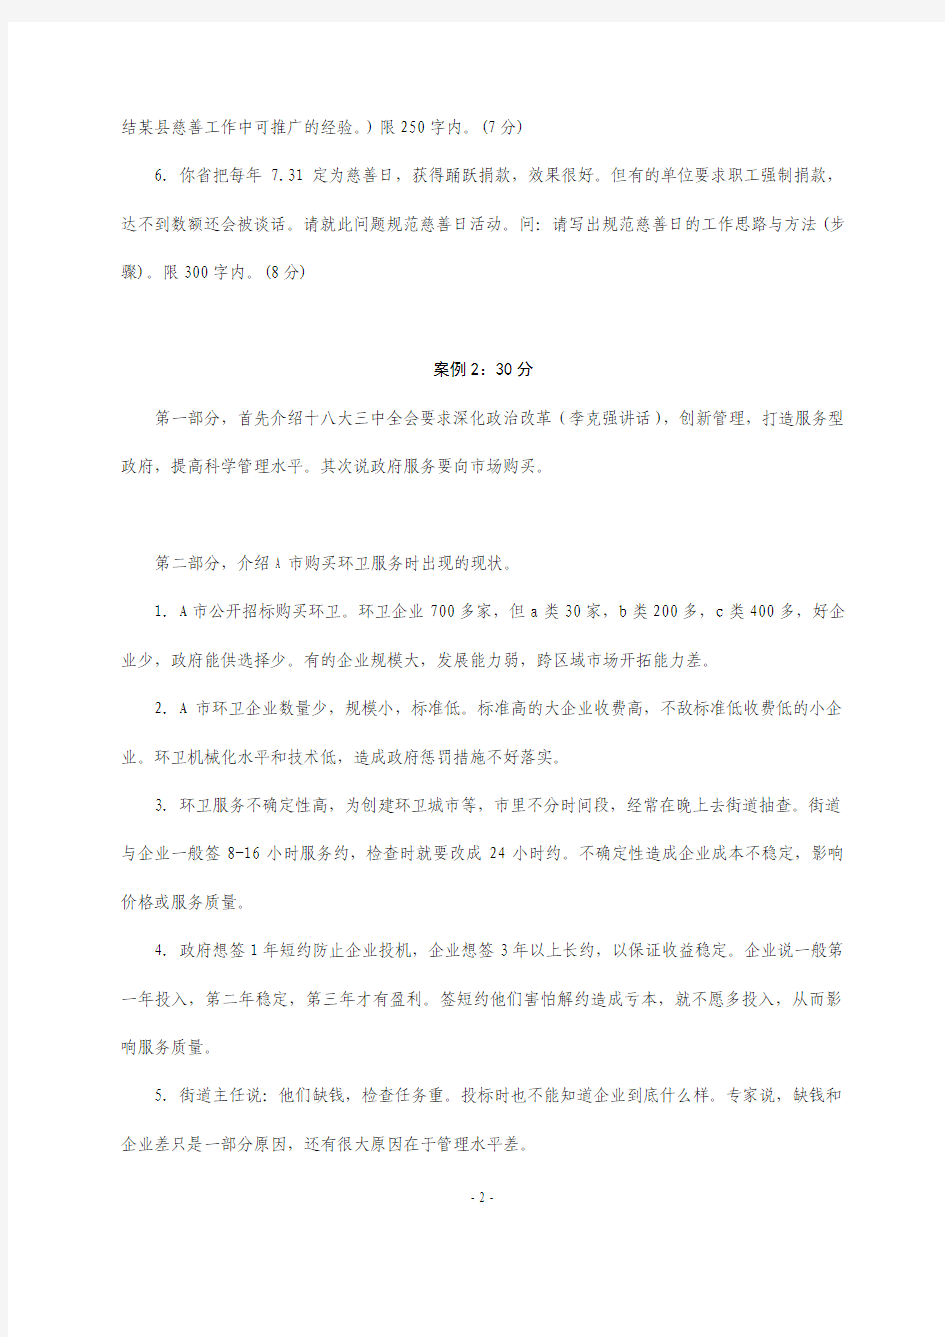 2014年中央机关遴选公务员考试真题(C卷)真题(整理版)